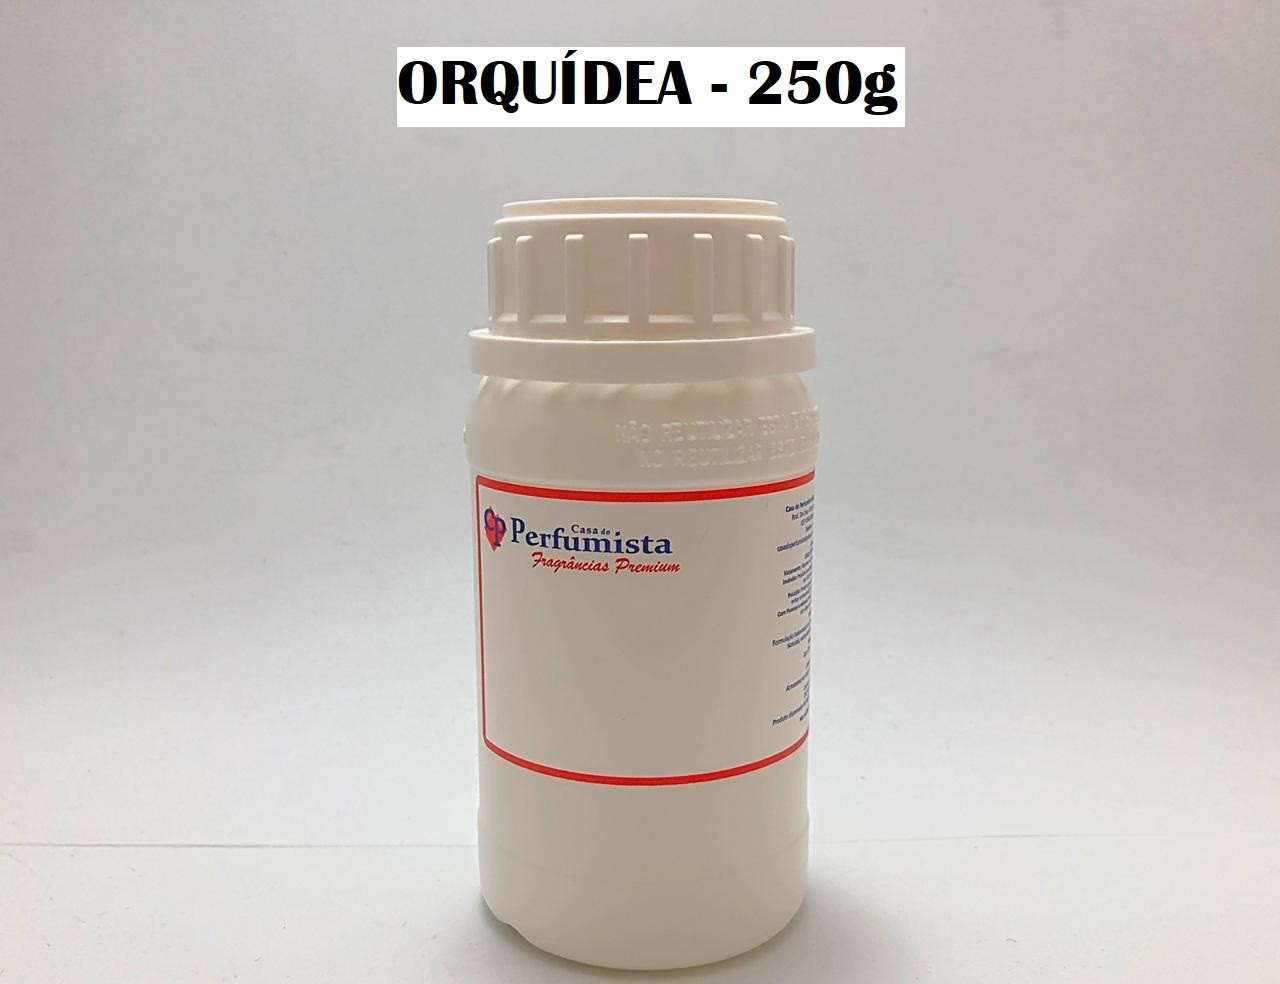 ORQUÍDEA - 250g